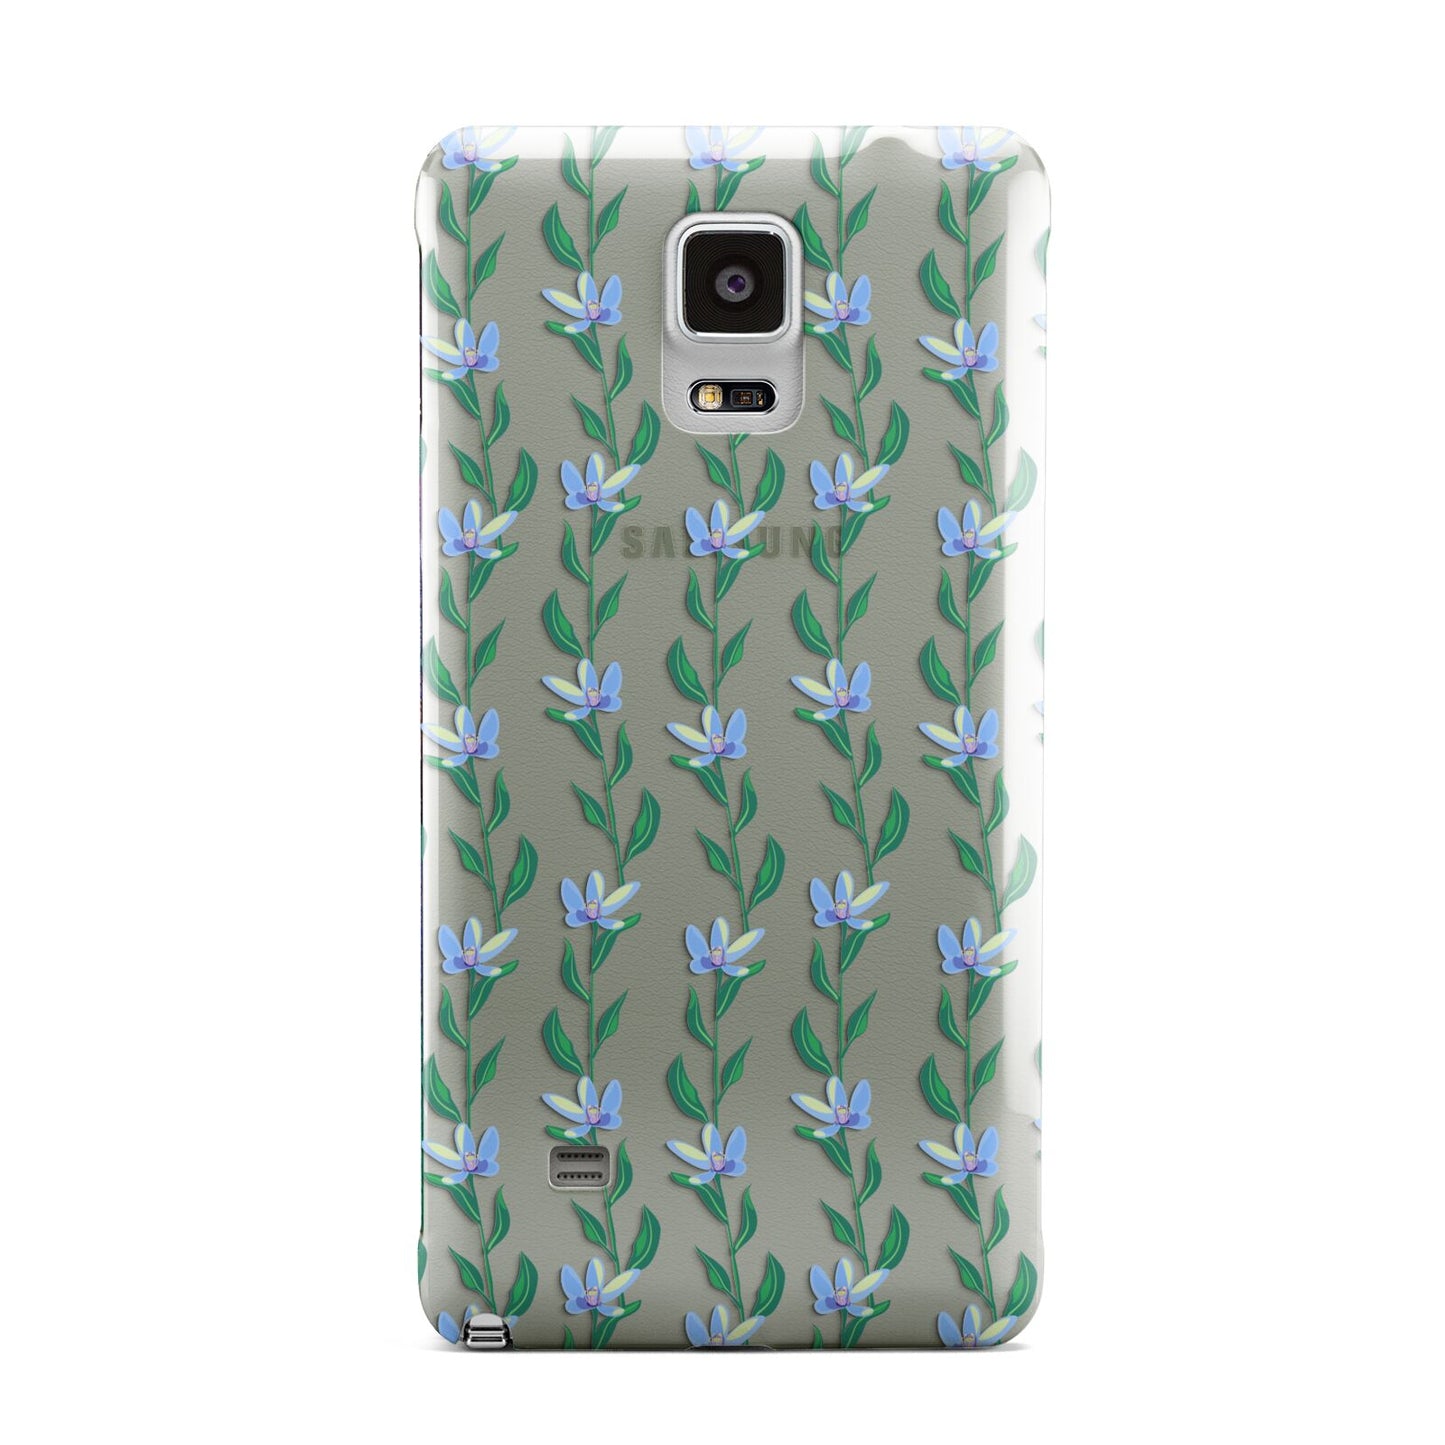 Flower Chain Samsung Galaxy Note 4 Case